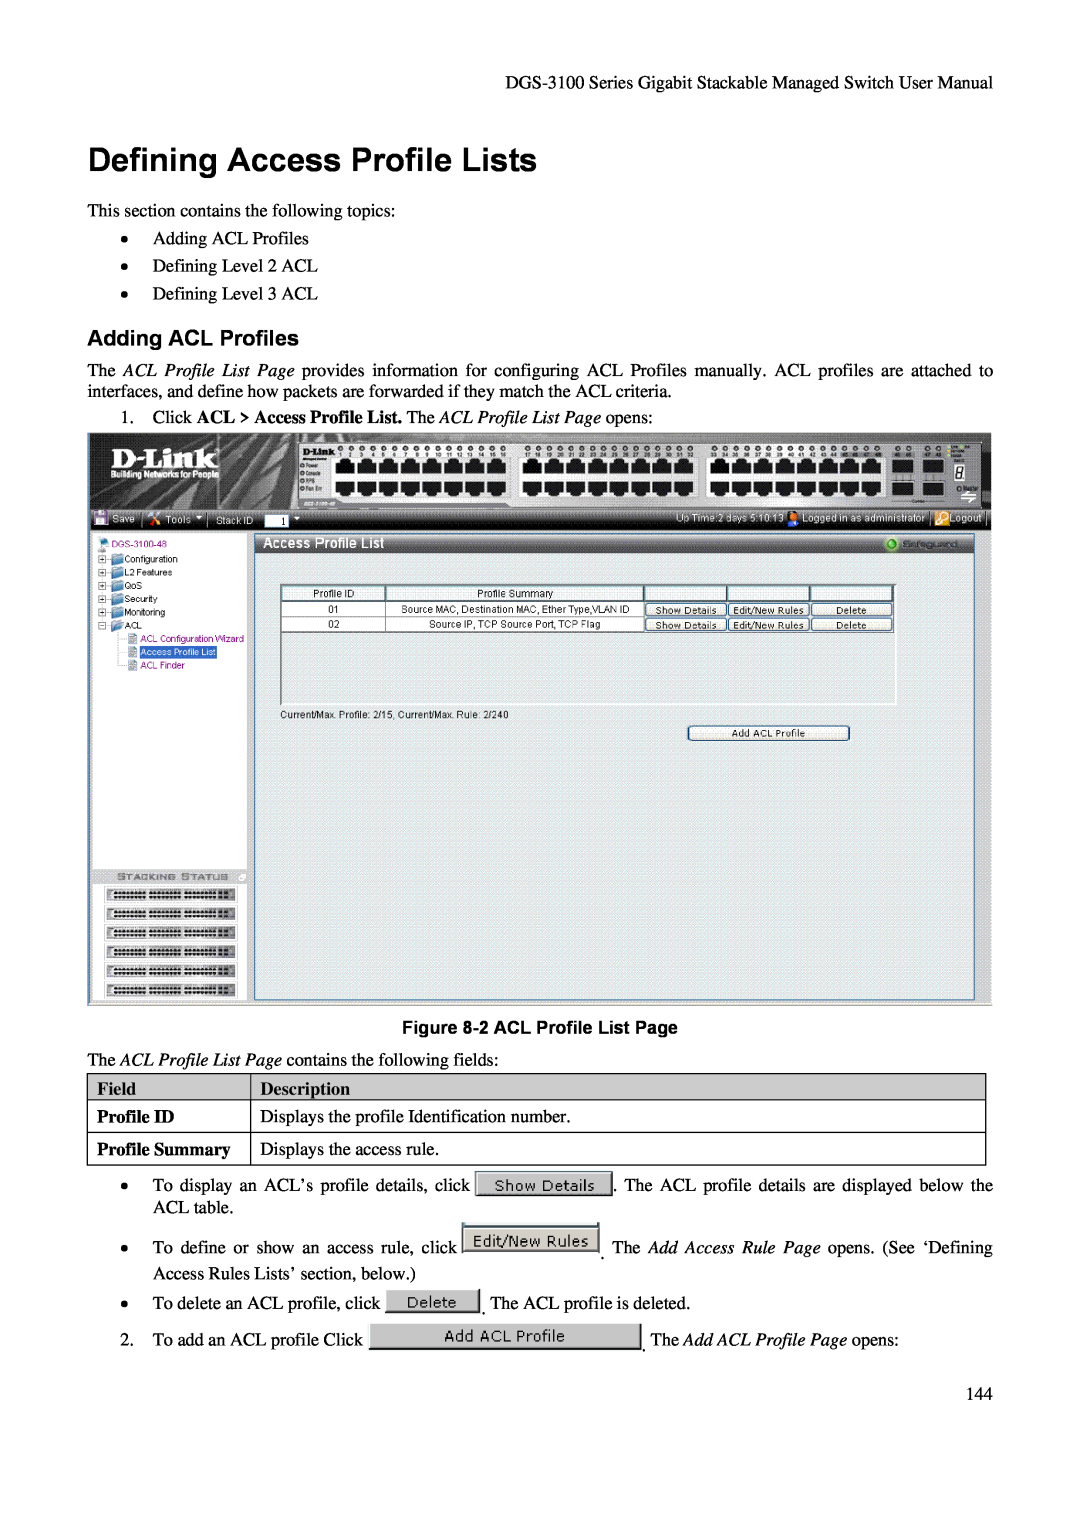 D-Link DGS-3100 user manual Defining Access Profile Lists, Adding ACL Profiles, 2 ACL Profile List Page, Field, Description 